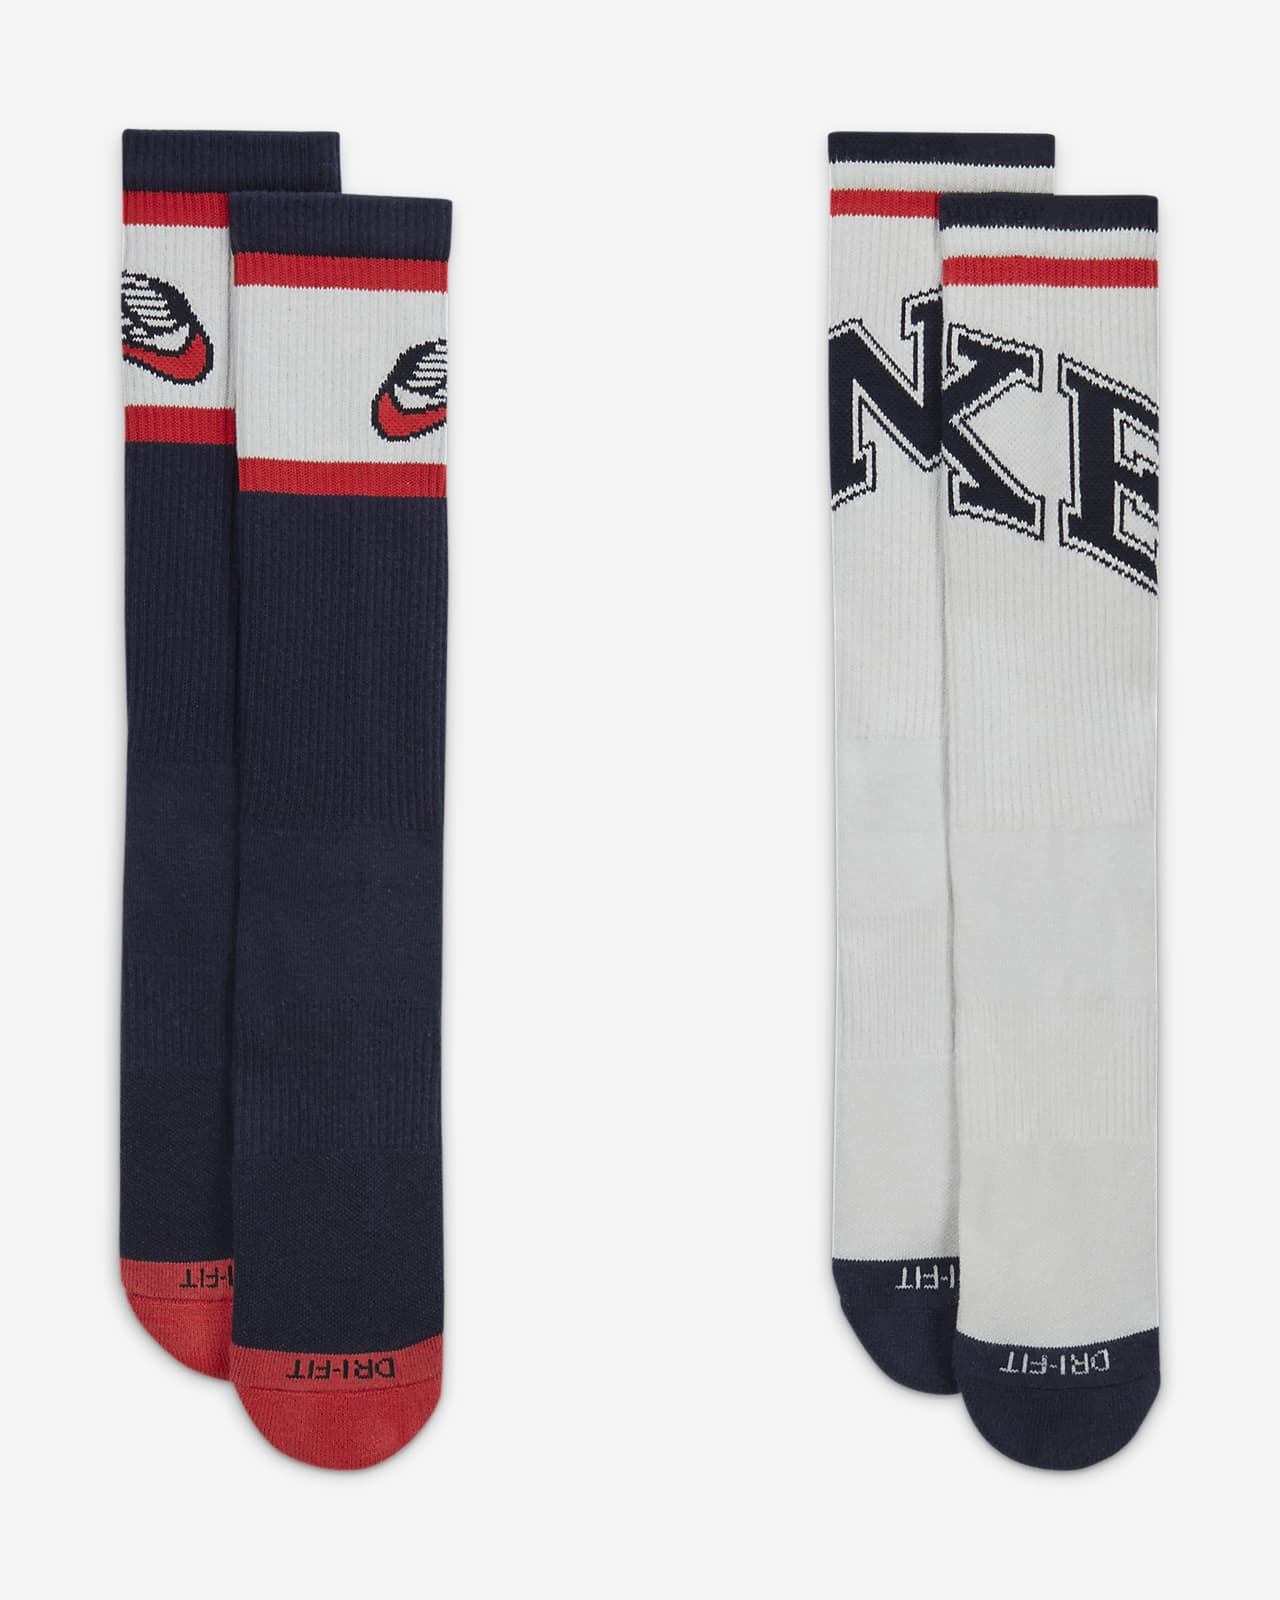 NIKE Everyday Plus Cushioned Socks DQ9168 902 - Shiekh